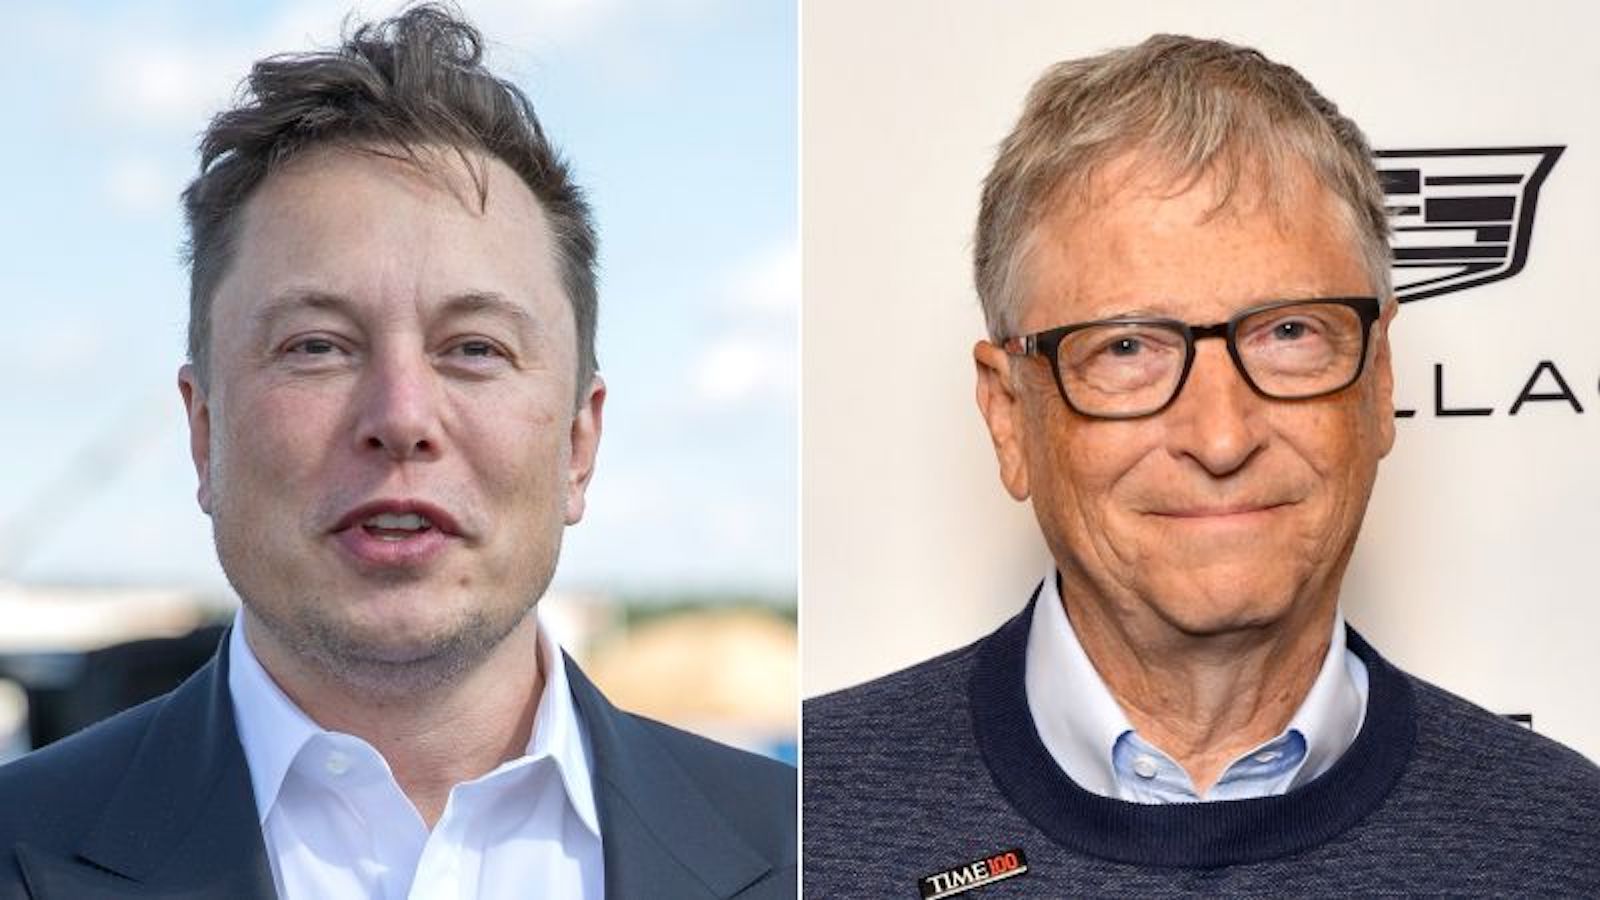 Este fue el origen de la enemistad de Elon Musk con Bill Gates, según la nueva biografía de Musk